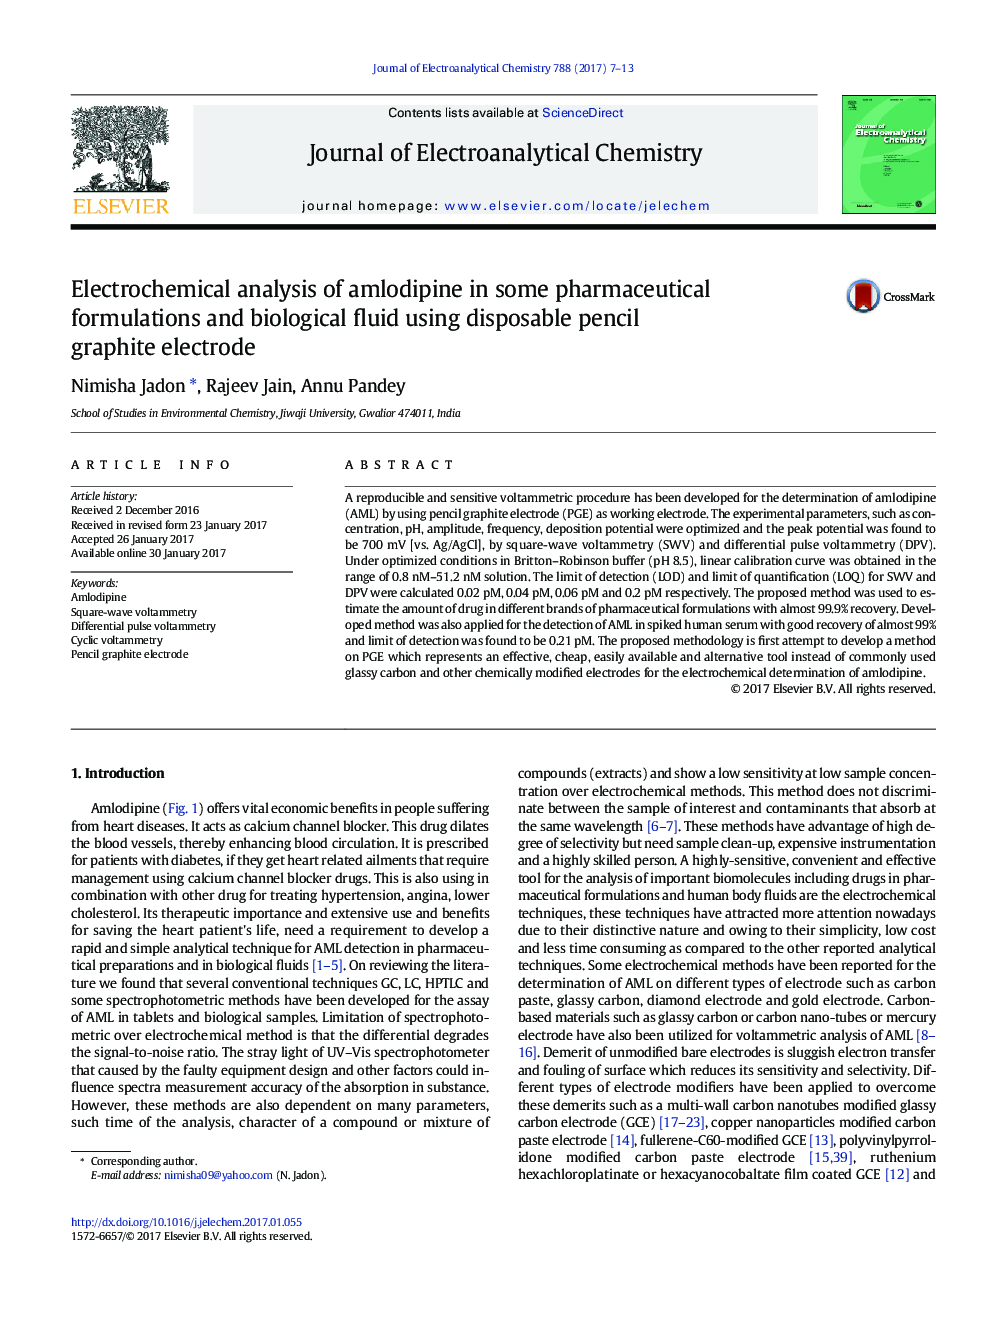 تجزیه و تحلیل الکتروشیمیایی آملودیپین در برخی از ترکیبات دارویی و مایع بیولوژیکی با استفاده از الکترودهای گرافیت مداد یکبار مصرف 